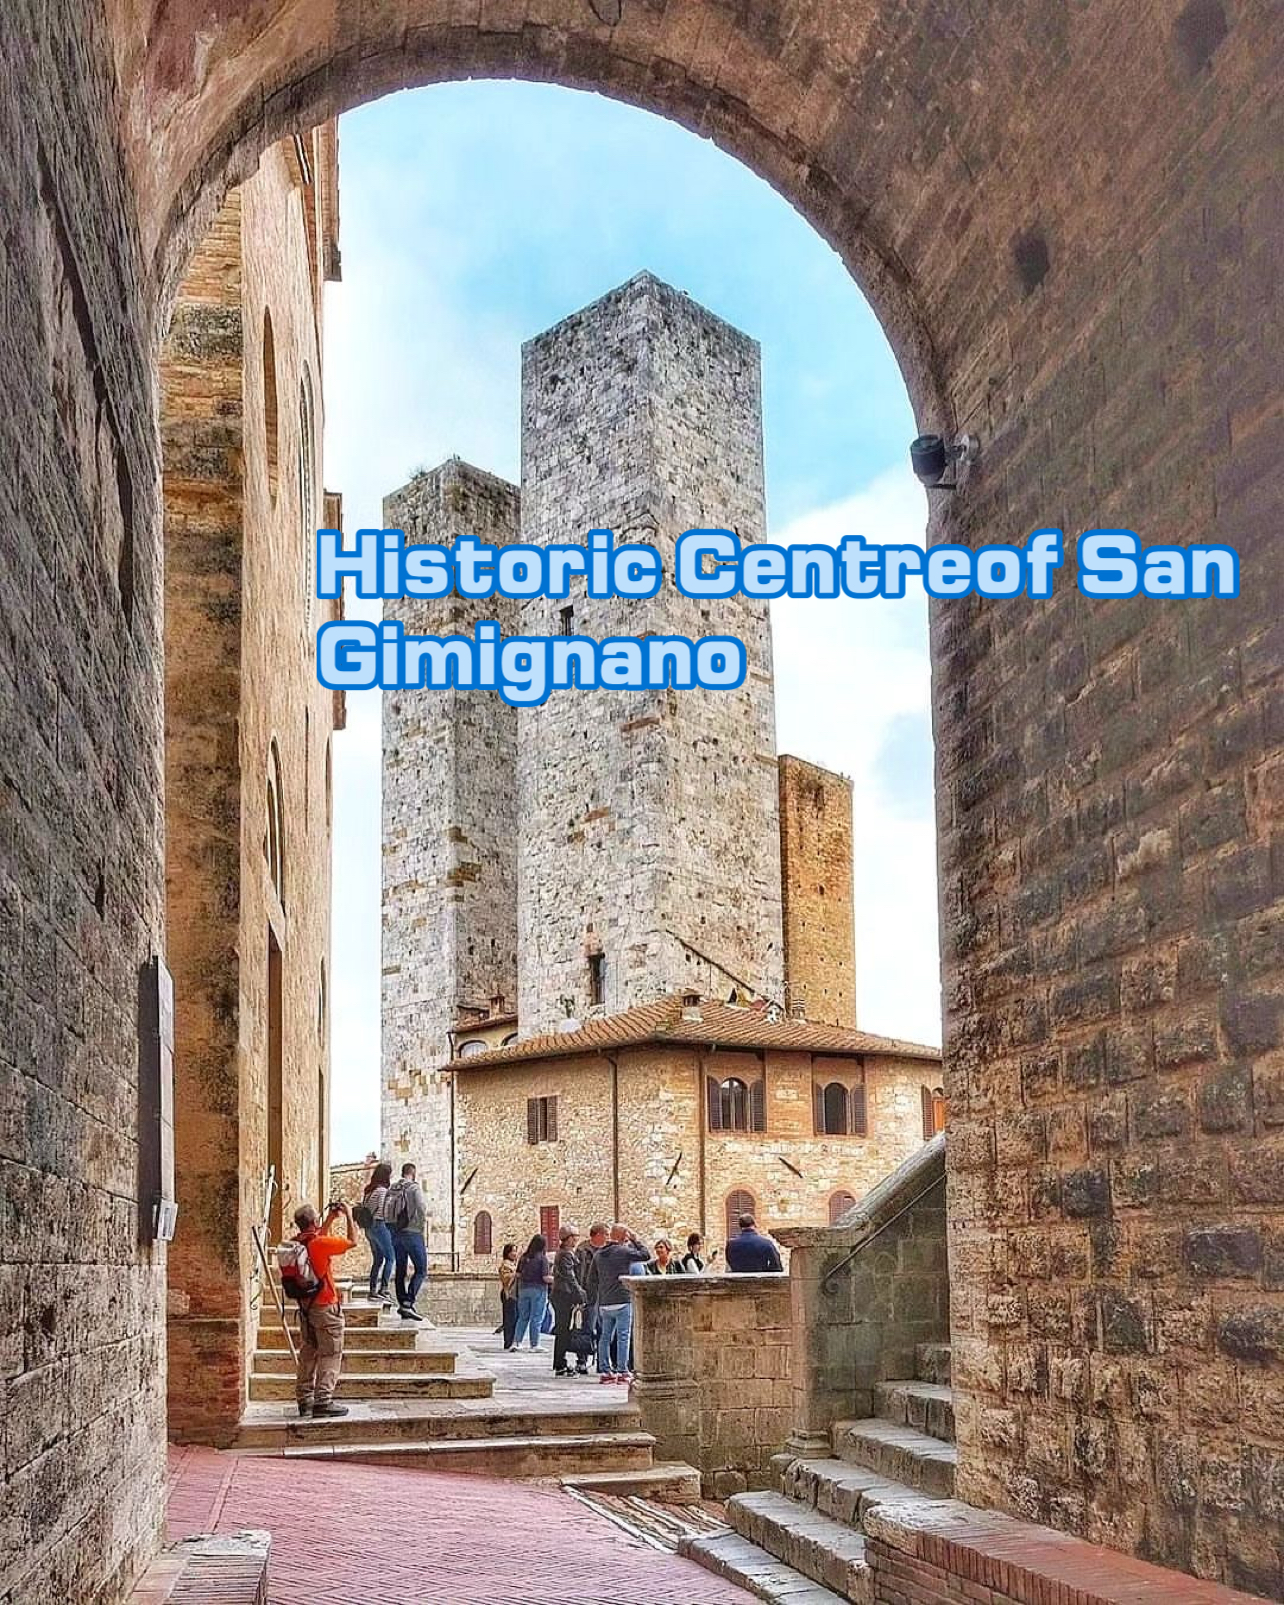 Historic Centreof San Gimignan